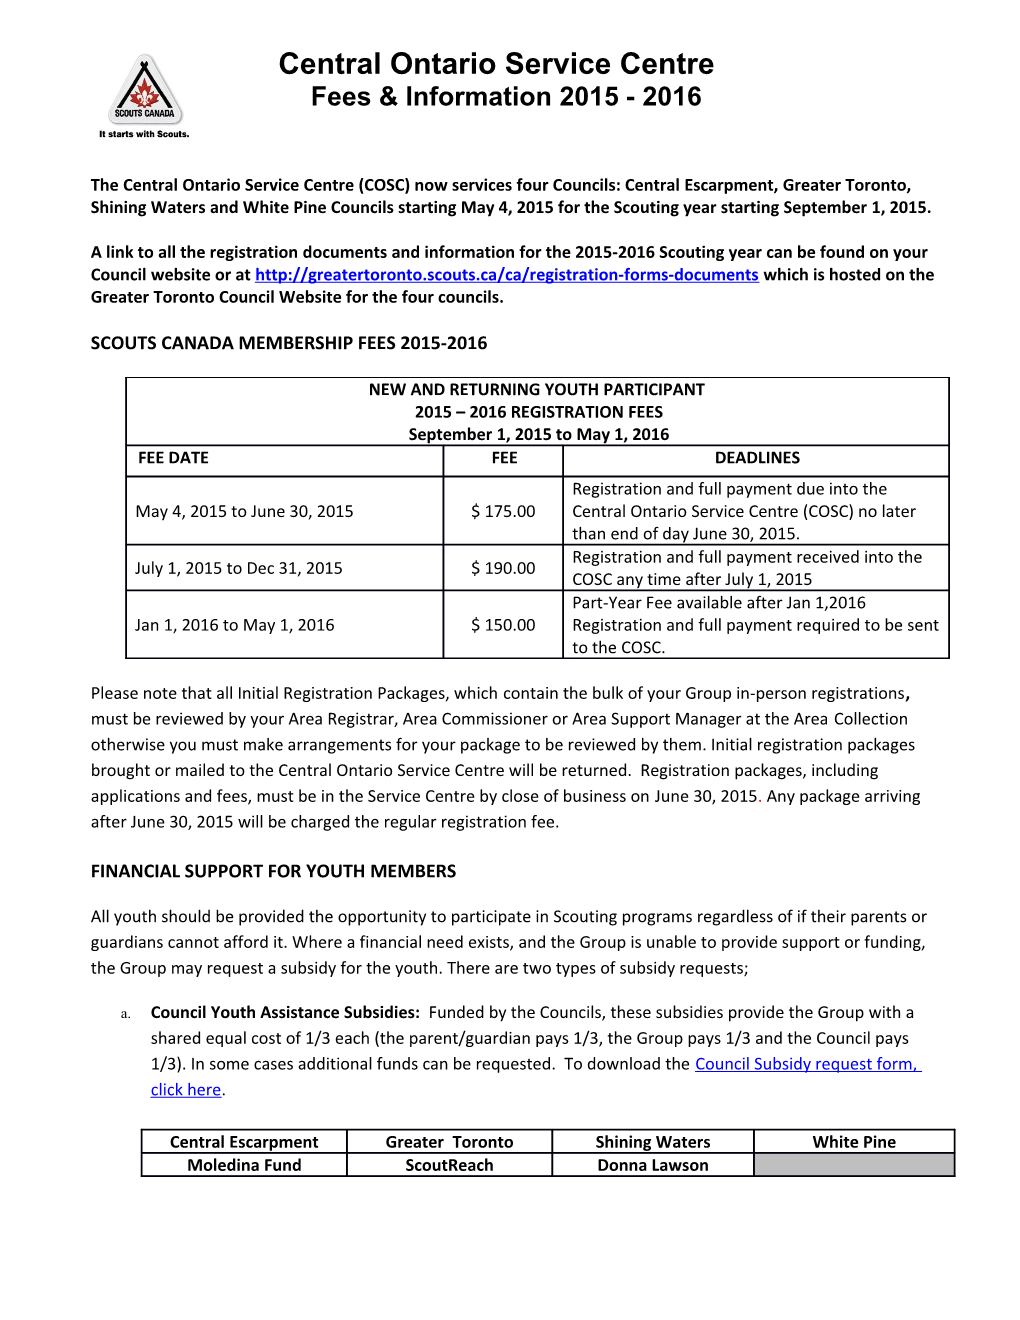 Central Escarpment Council Information